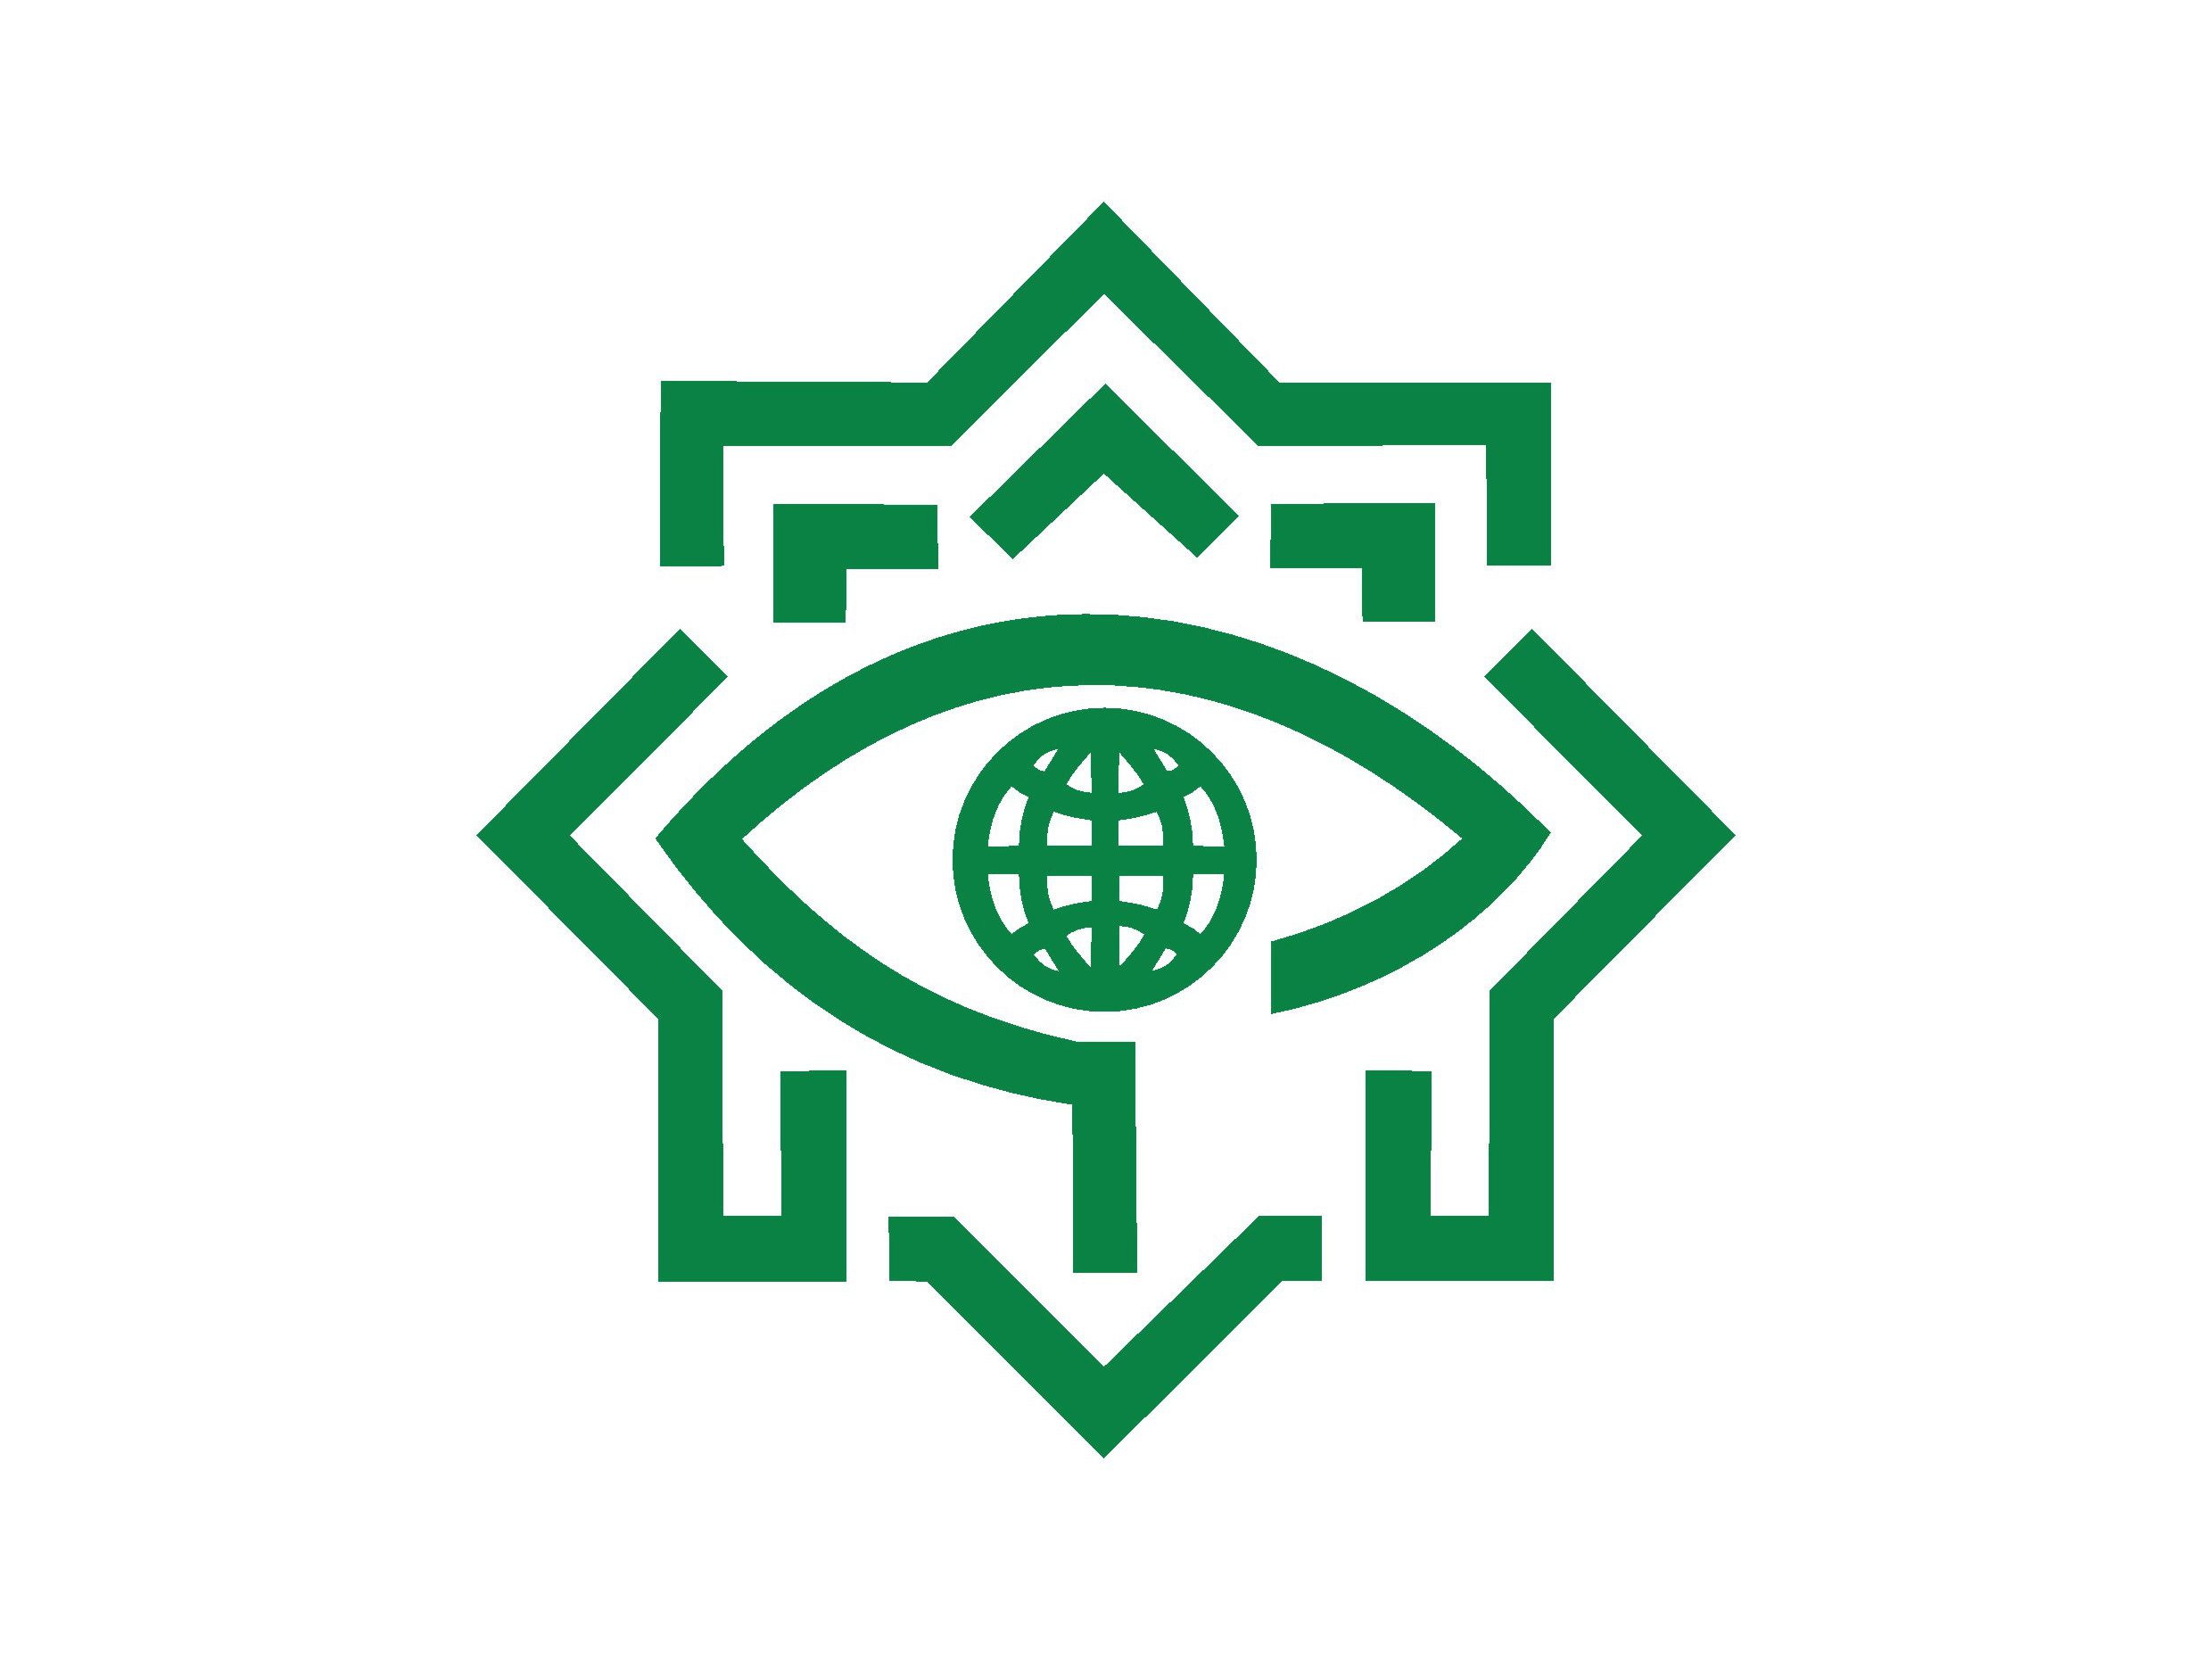 وزارت اطلاعات